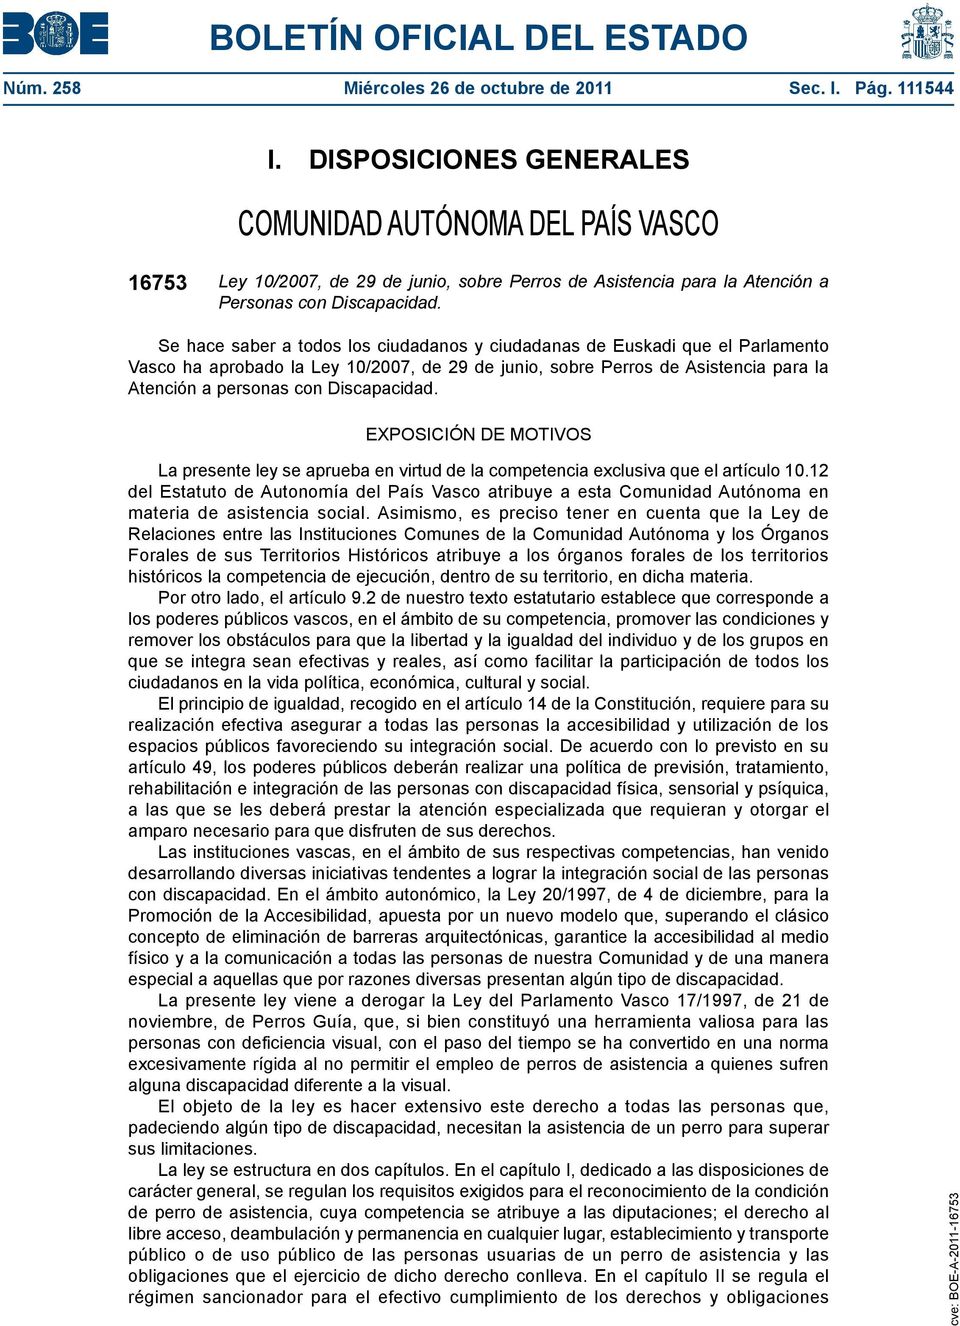 Se hace saber a todos los ciudadanos y ciudadanas de Euskadi que el Parlamento Vasco ha aprobado la Ley 10/2007, de 29 de junio, sobre Perros de Asistencia para la Atención a personas con